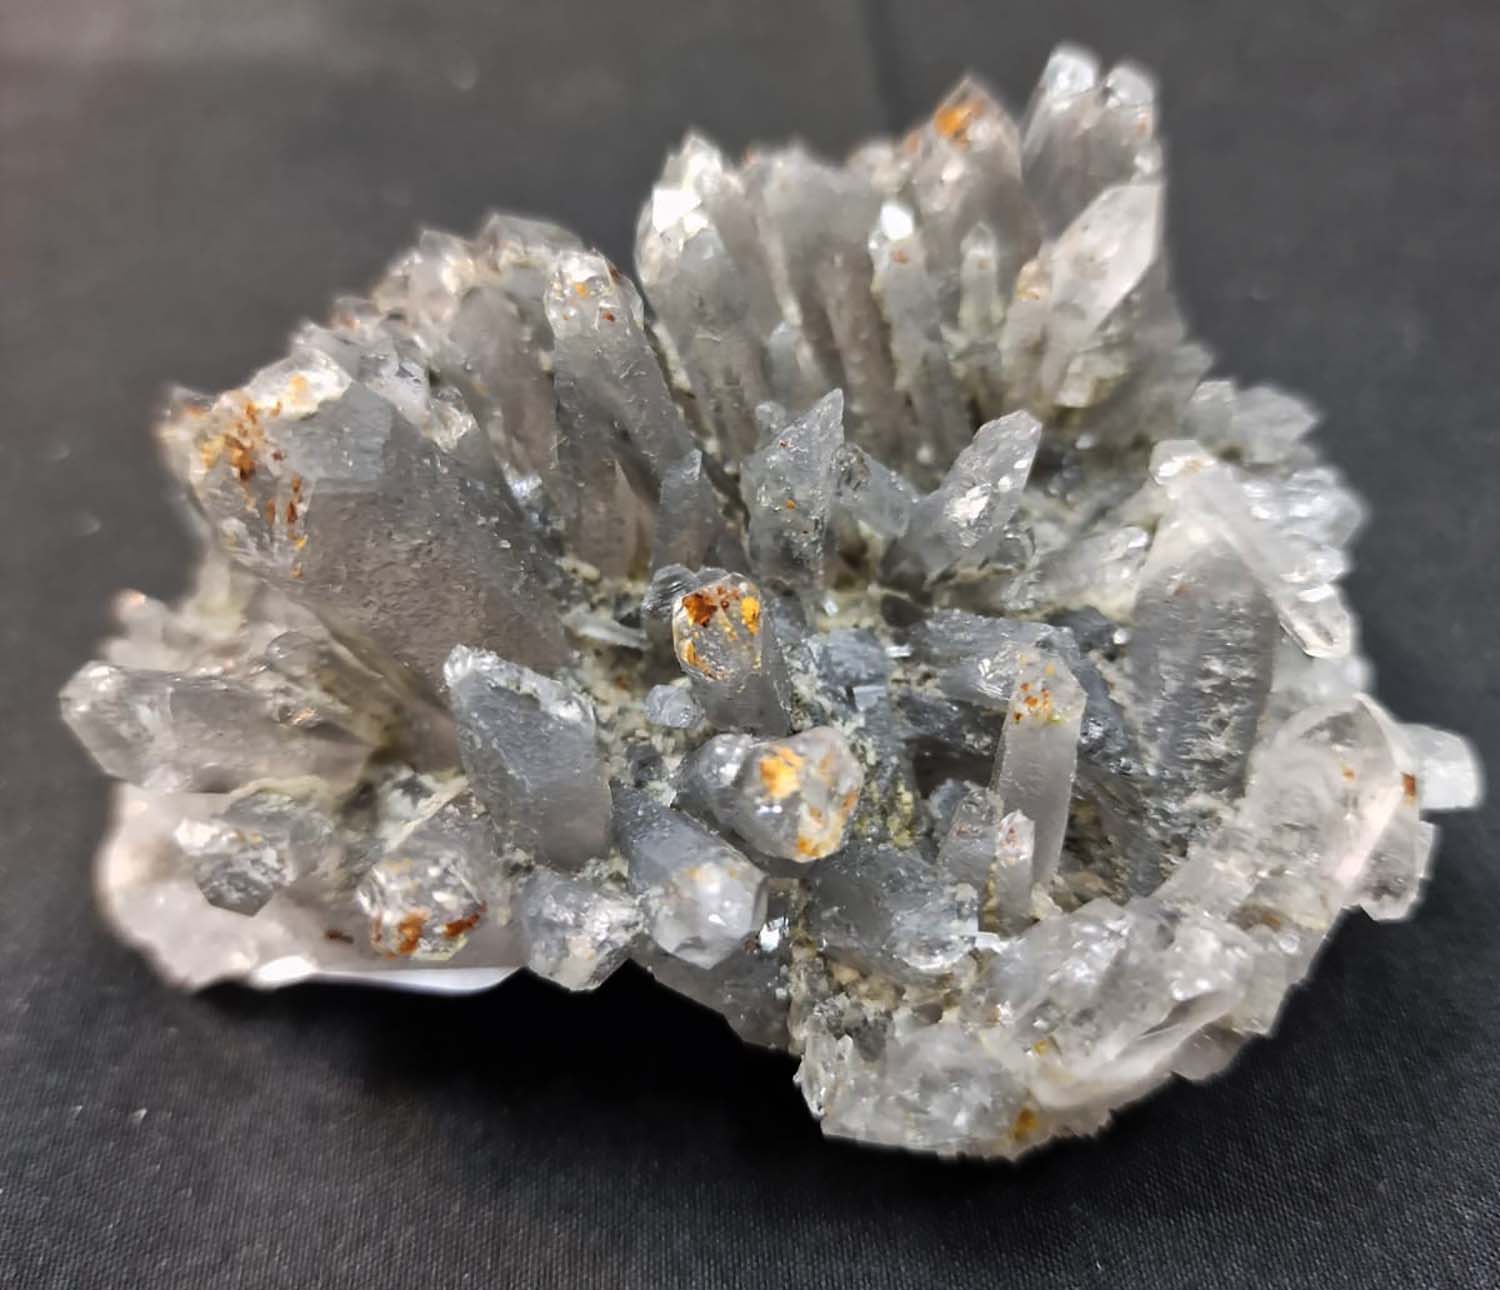 GeoFossils Blue Tara Quartz with inclusions of magnesium, lithium